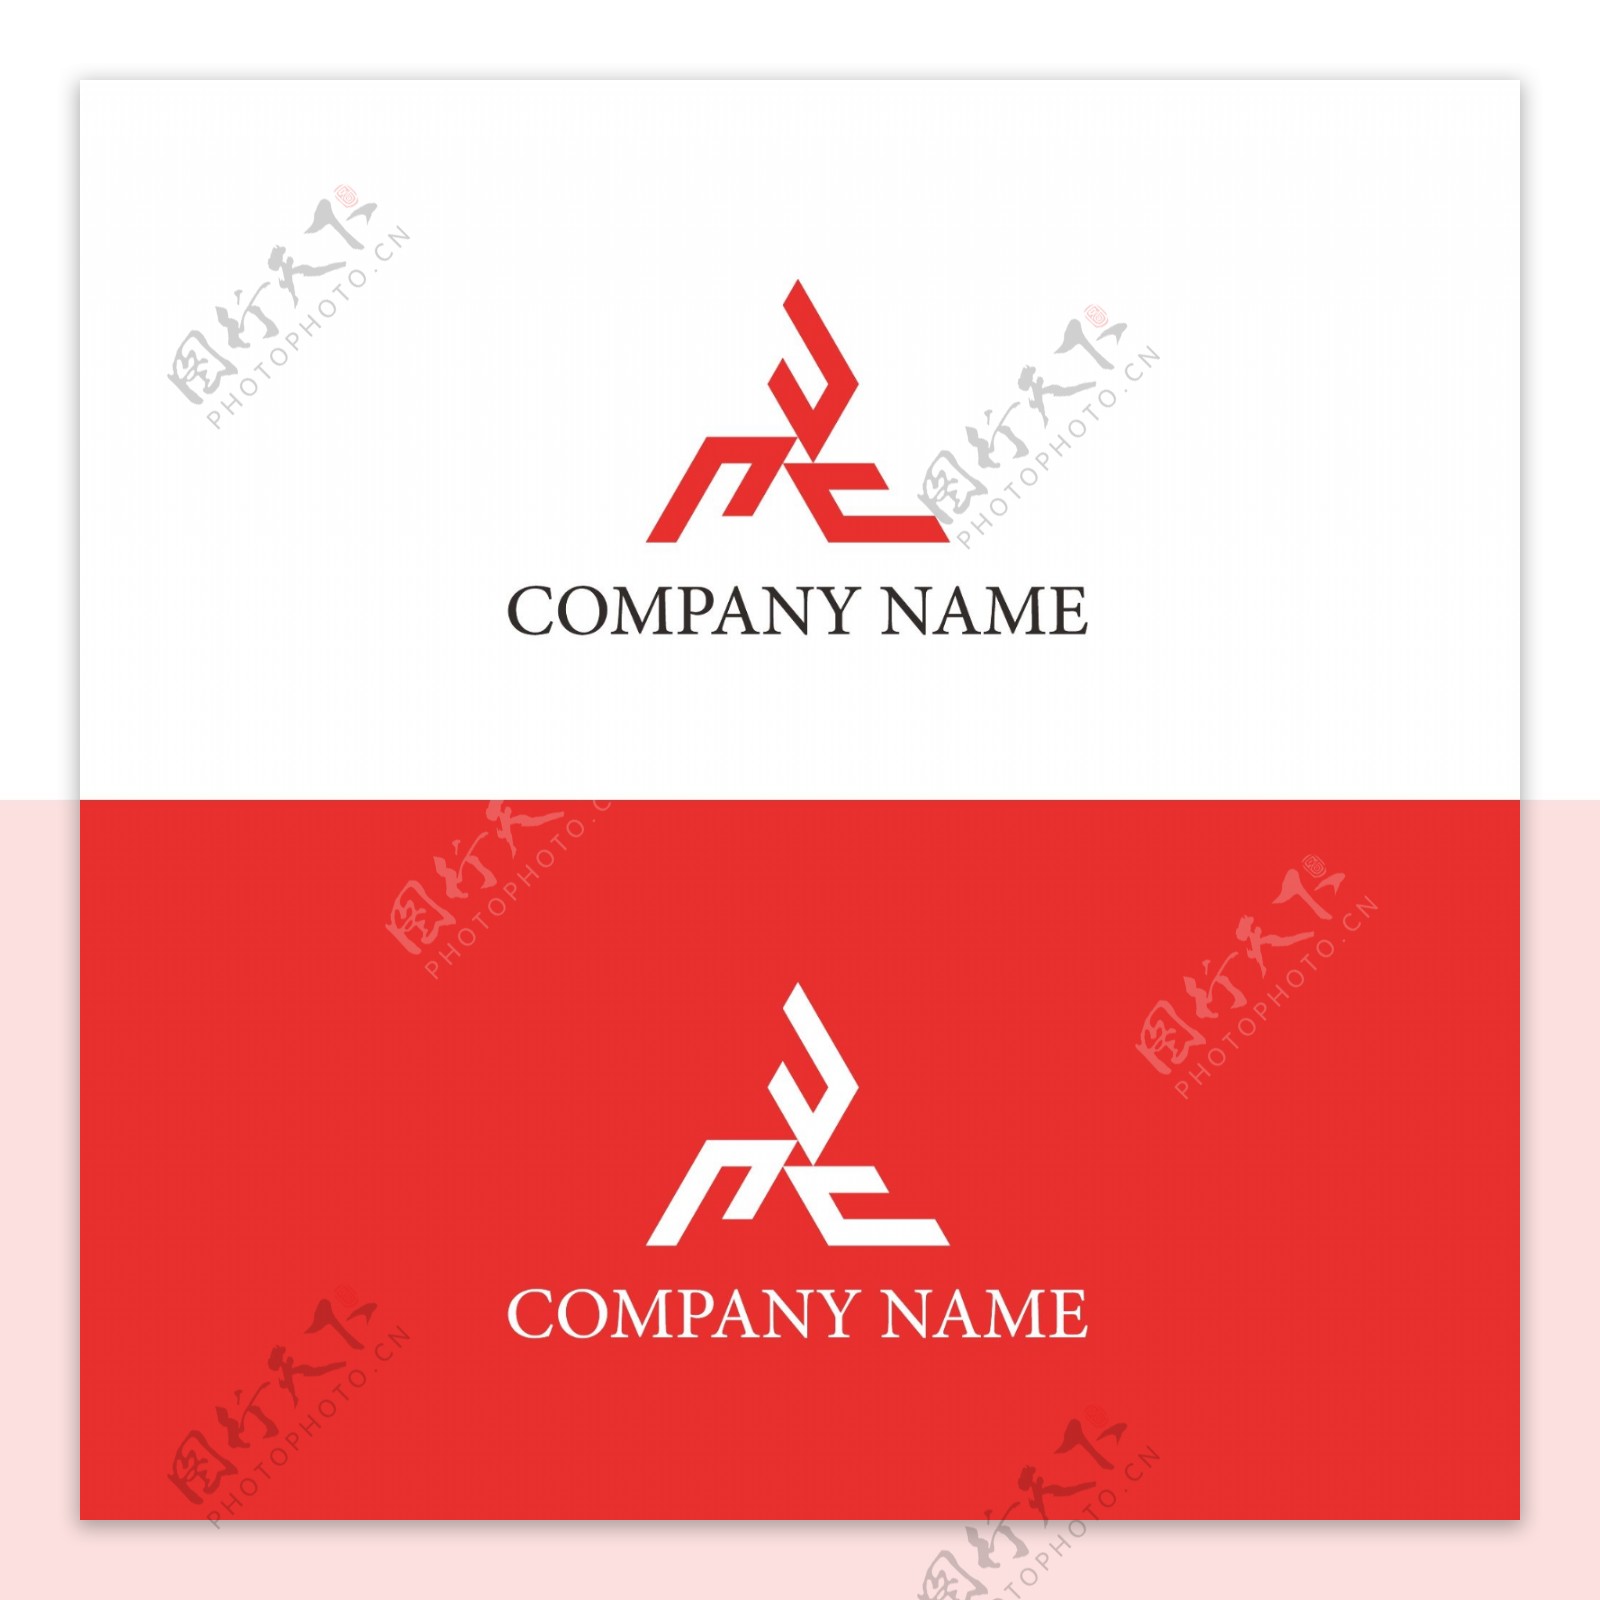 企业工业行业logo标识